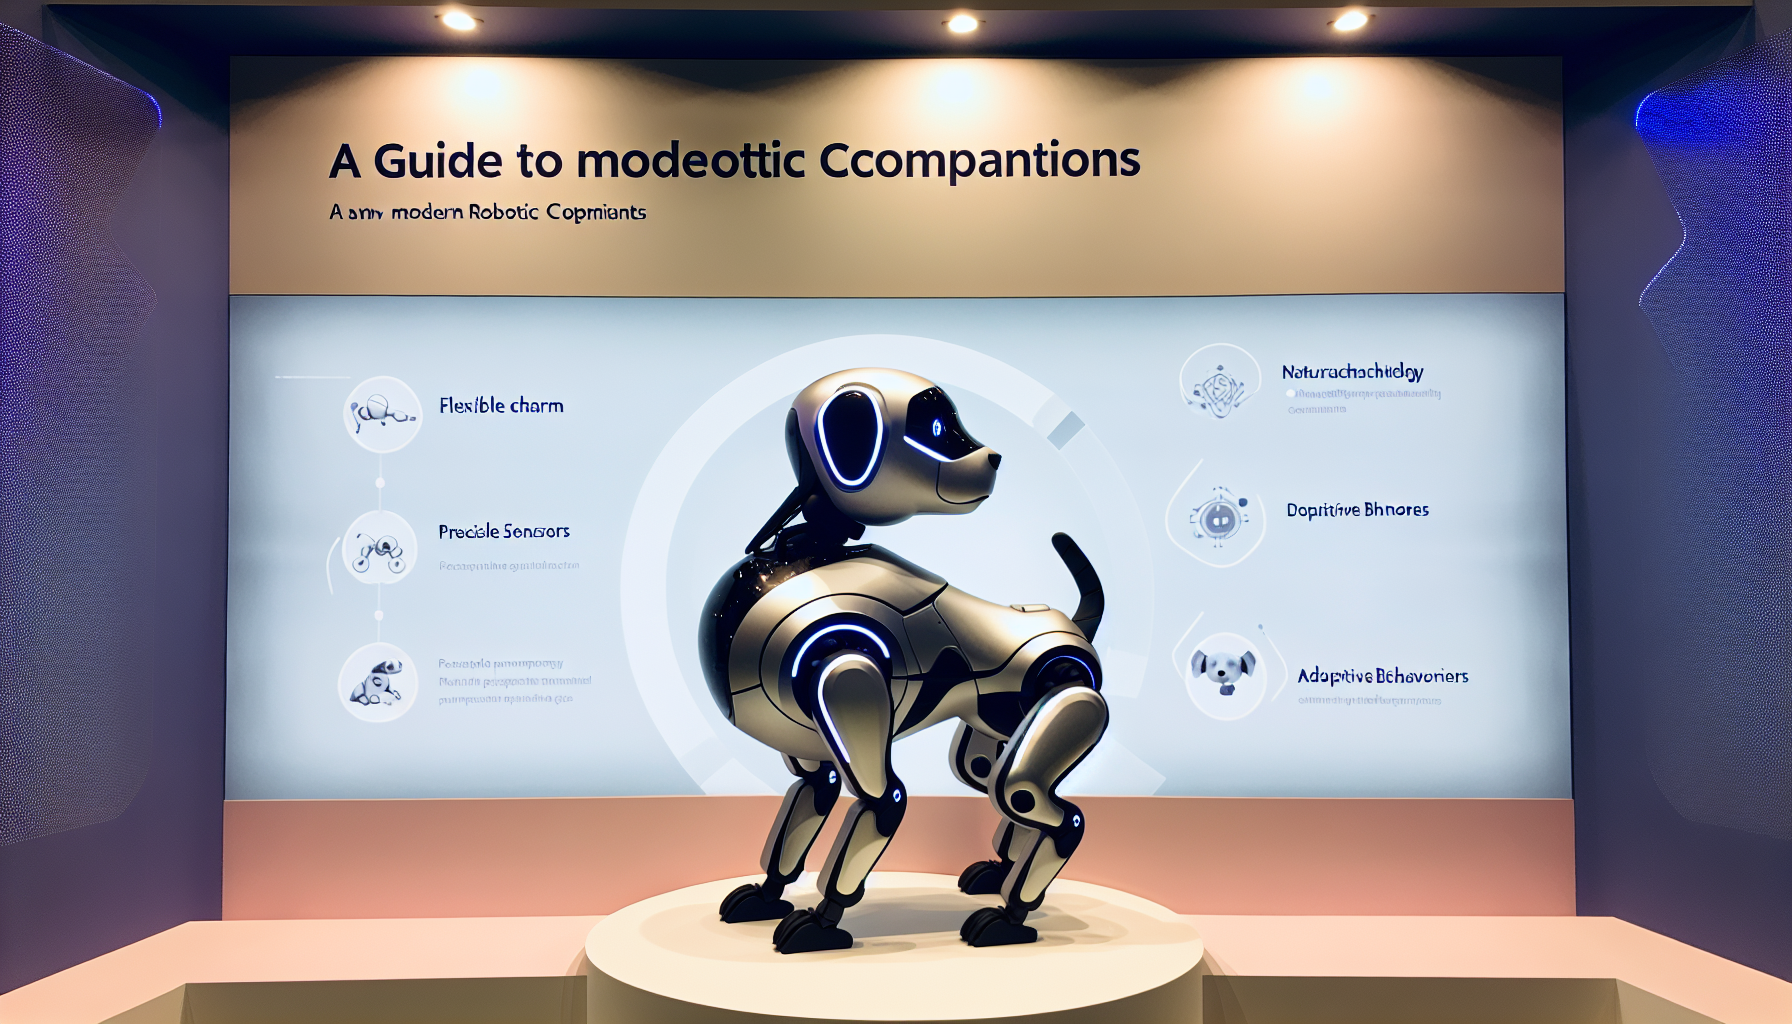 Khám phá hướng dẫn đầy đủ về chú chó robot Boston Dynamics, các tính năng, cách sử dụng và hiệu suất ấn tượng của nó.